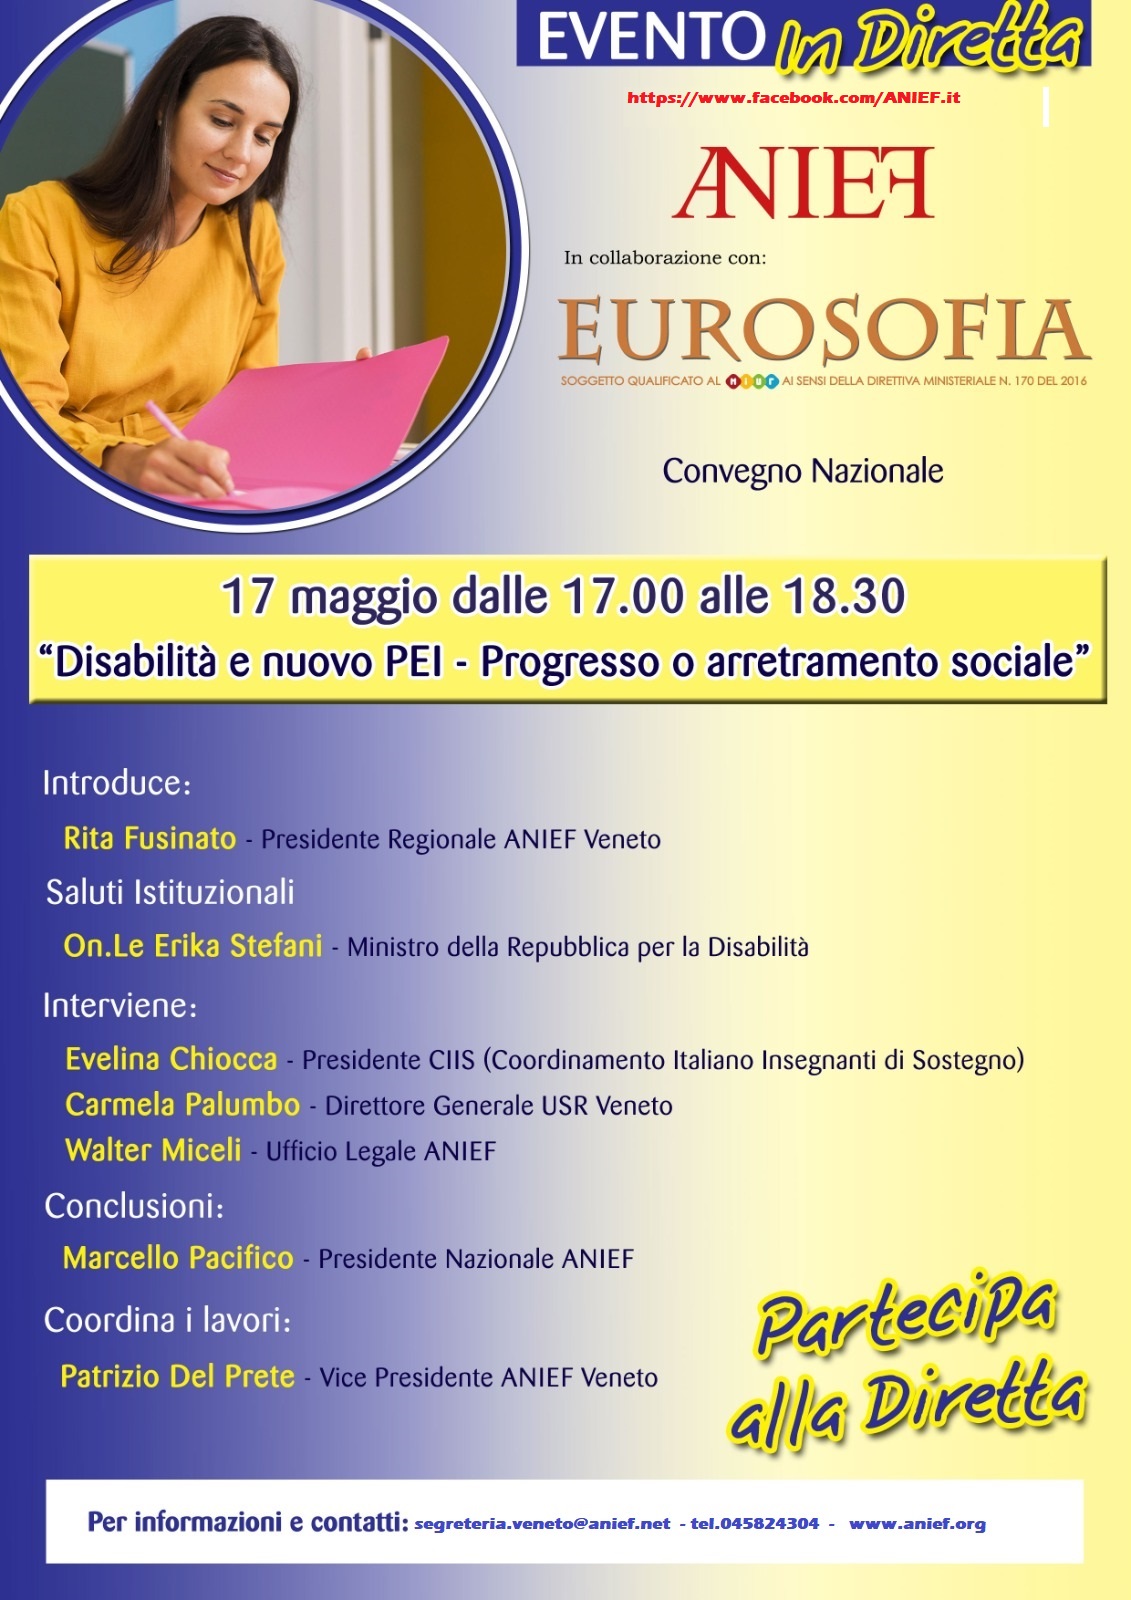 Anief Veneto - Evento in diretta Facebook 17-5-21